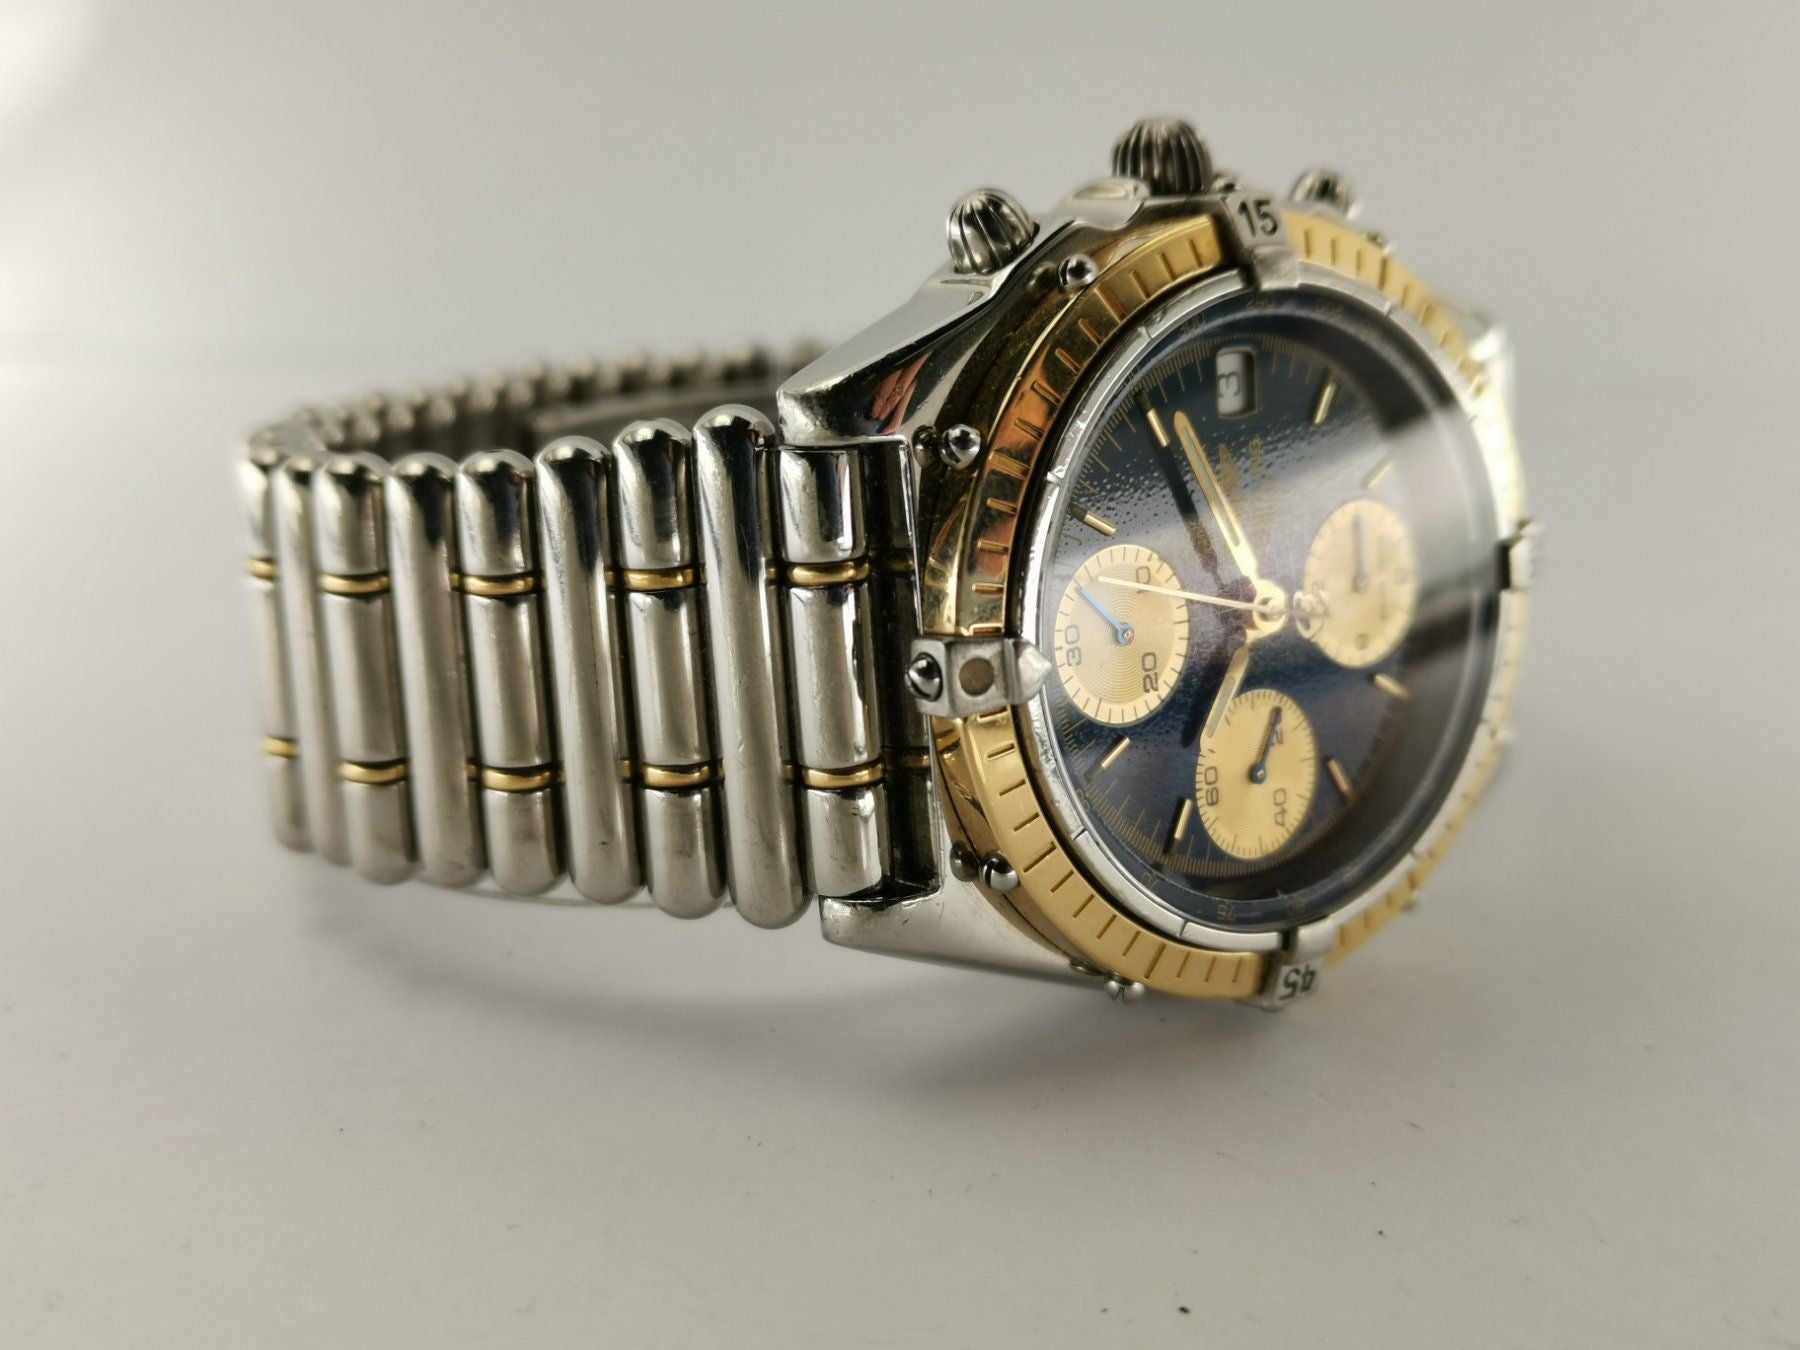 Breitling Chronomat StahlGold - d13050